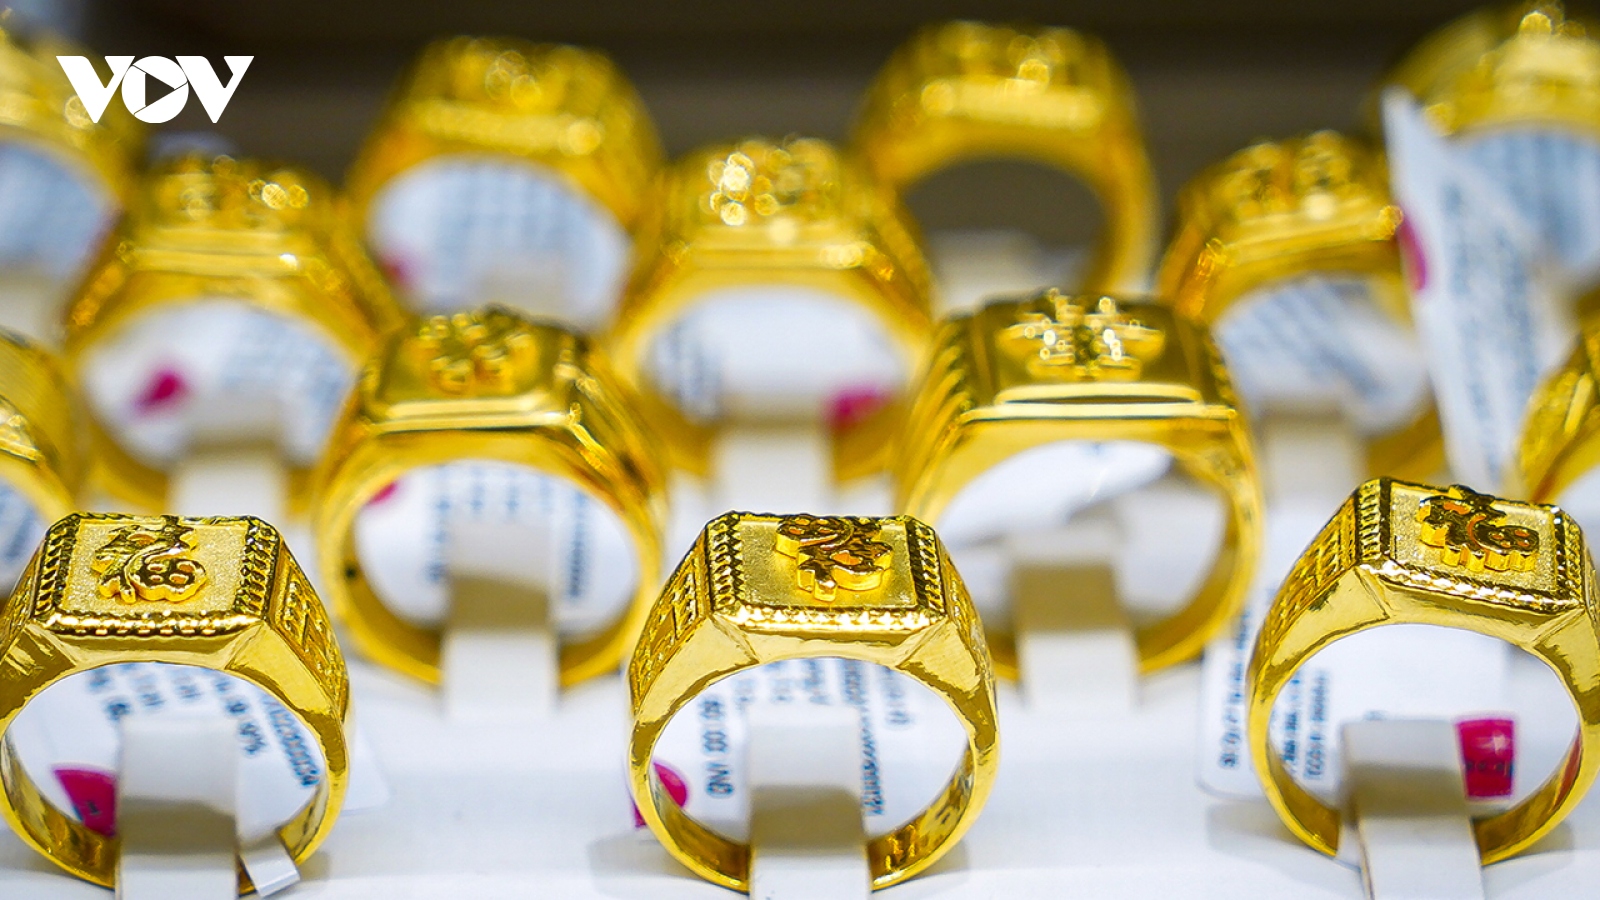 Giá vàng hôm nay 3/11: Vàng SJC giảm nhẹ, bán ra ở mức 70,65 triệu đồng/lượng